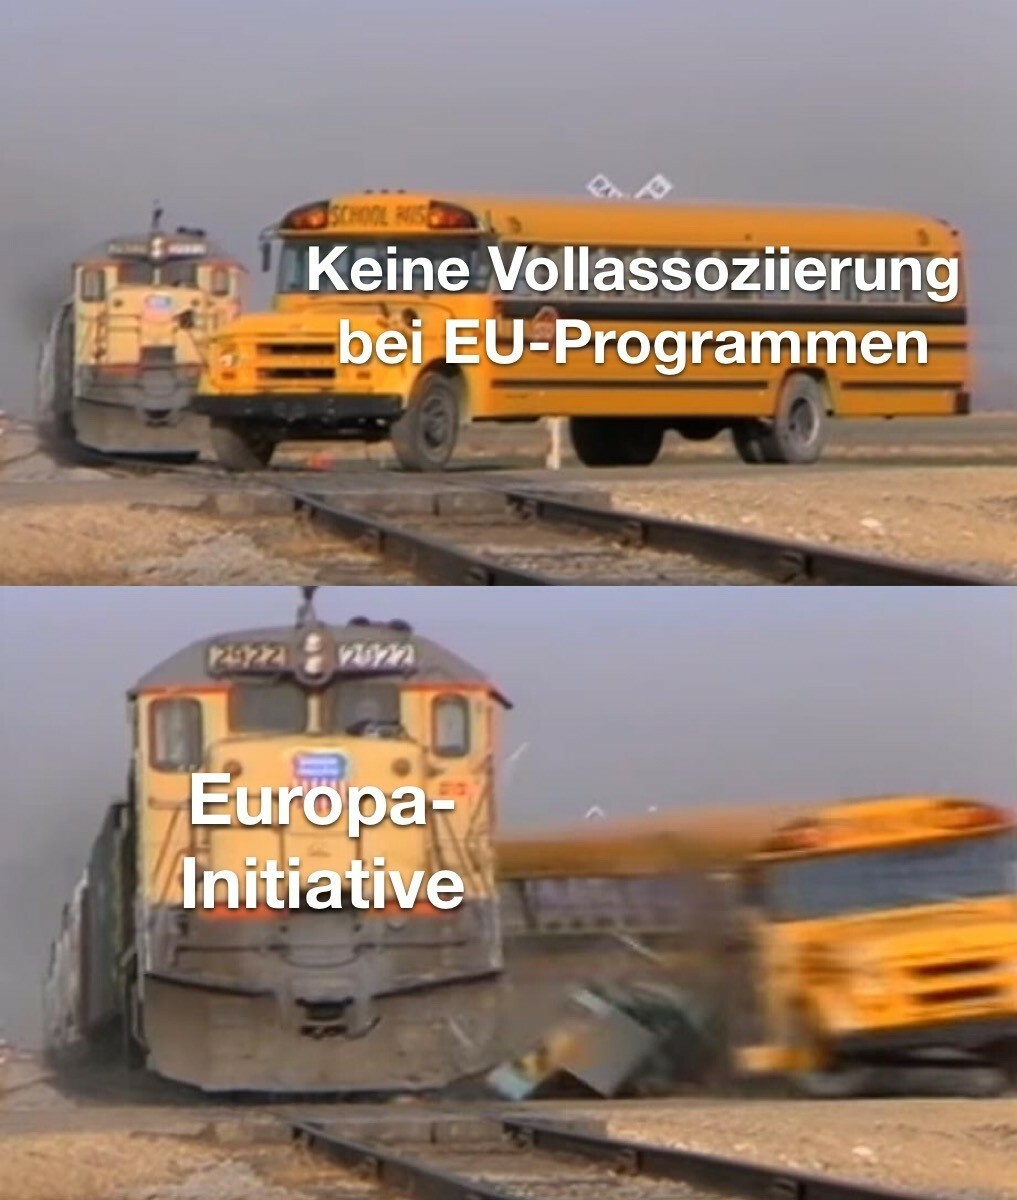 Ein Meme über die Vollassoziierung, bei dem ein Bus, der die Blockade bei der Teilnahme bei EU-Programmen repräsentiert, von einem Zug weggerammt wird, der für die Europa-Initiative steht. 